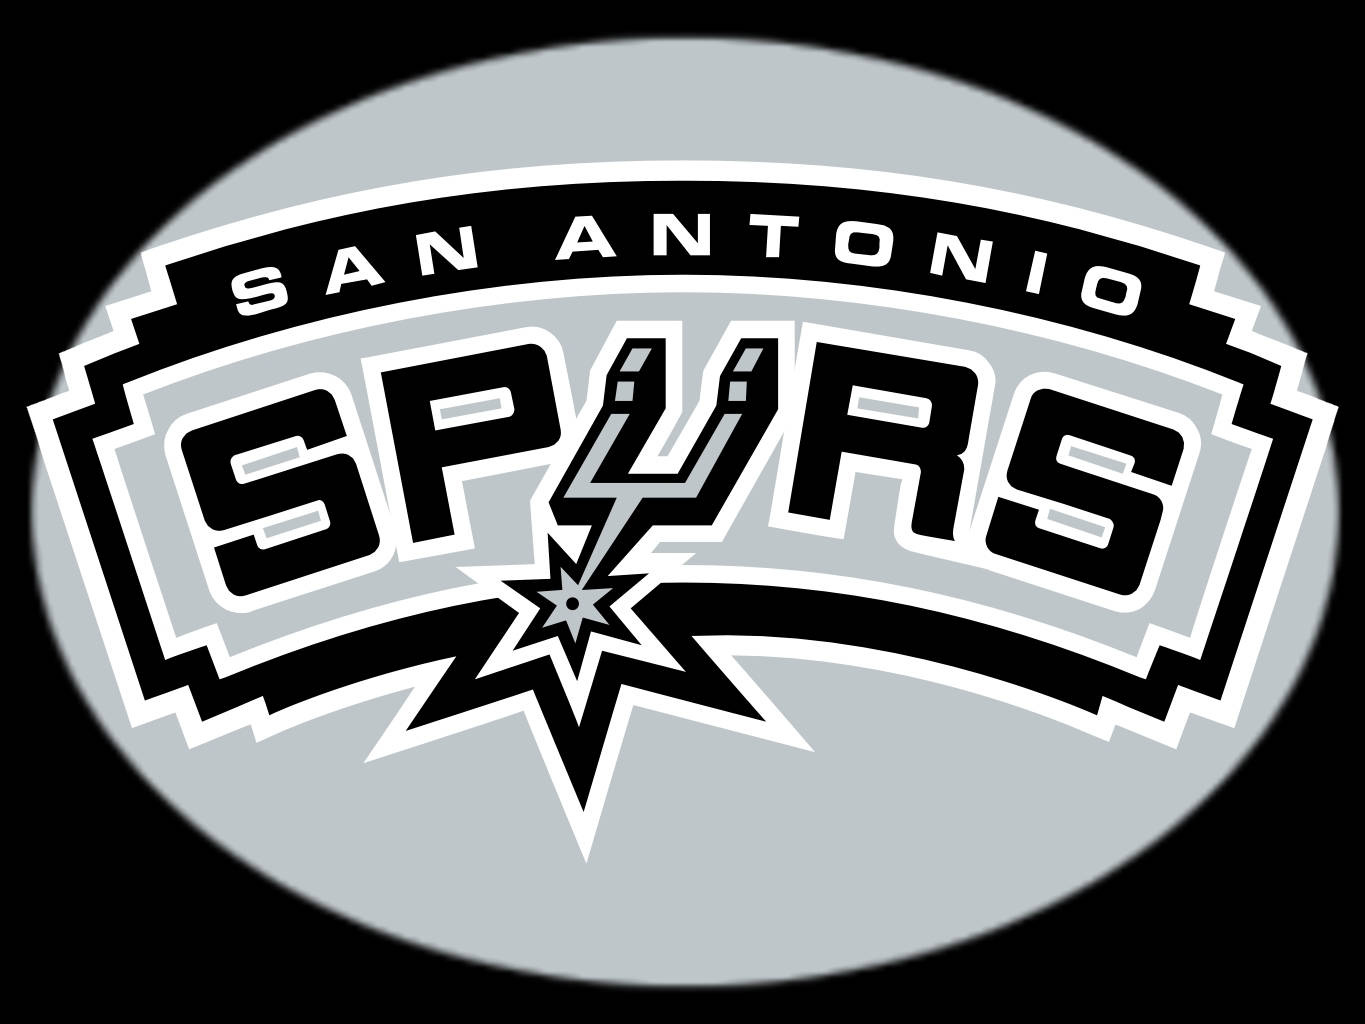 San Antonio Spurs NBA Wallpaper